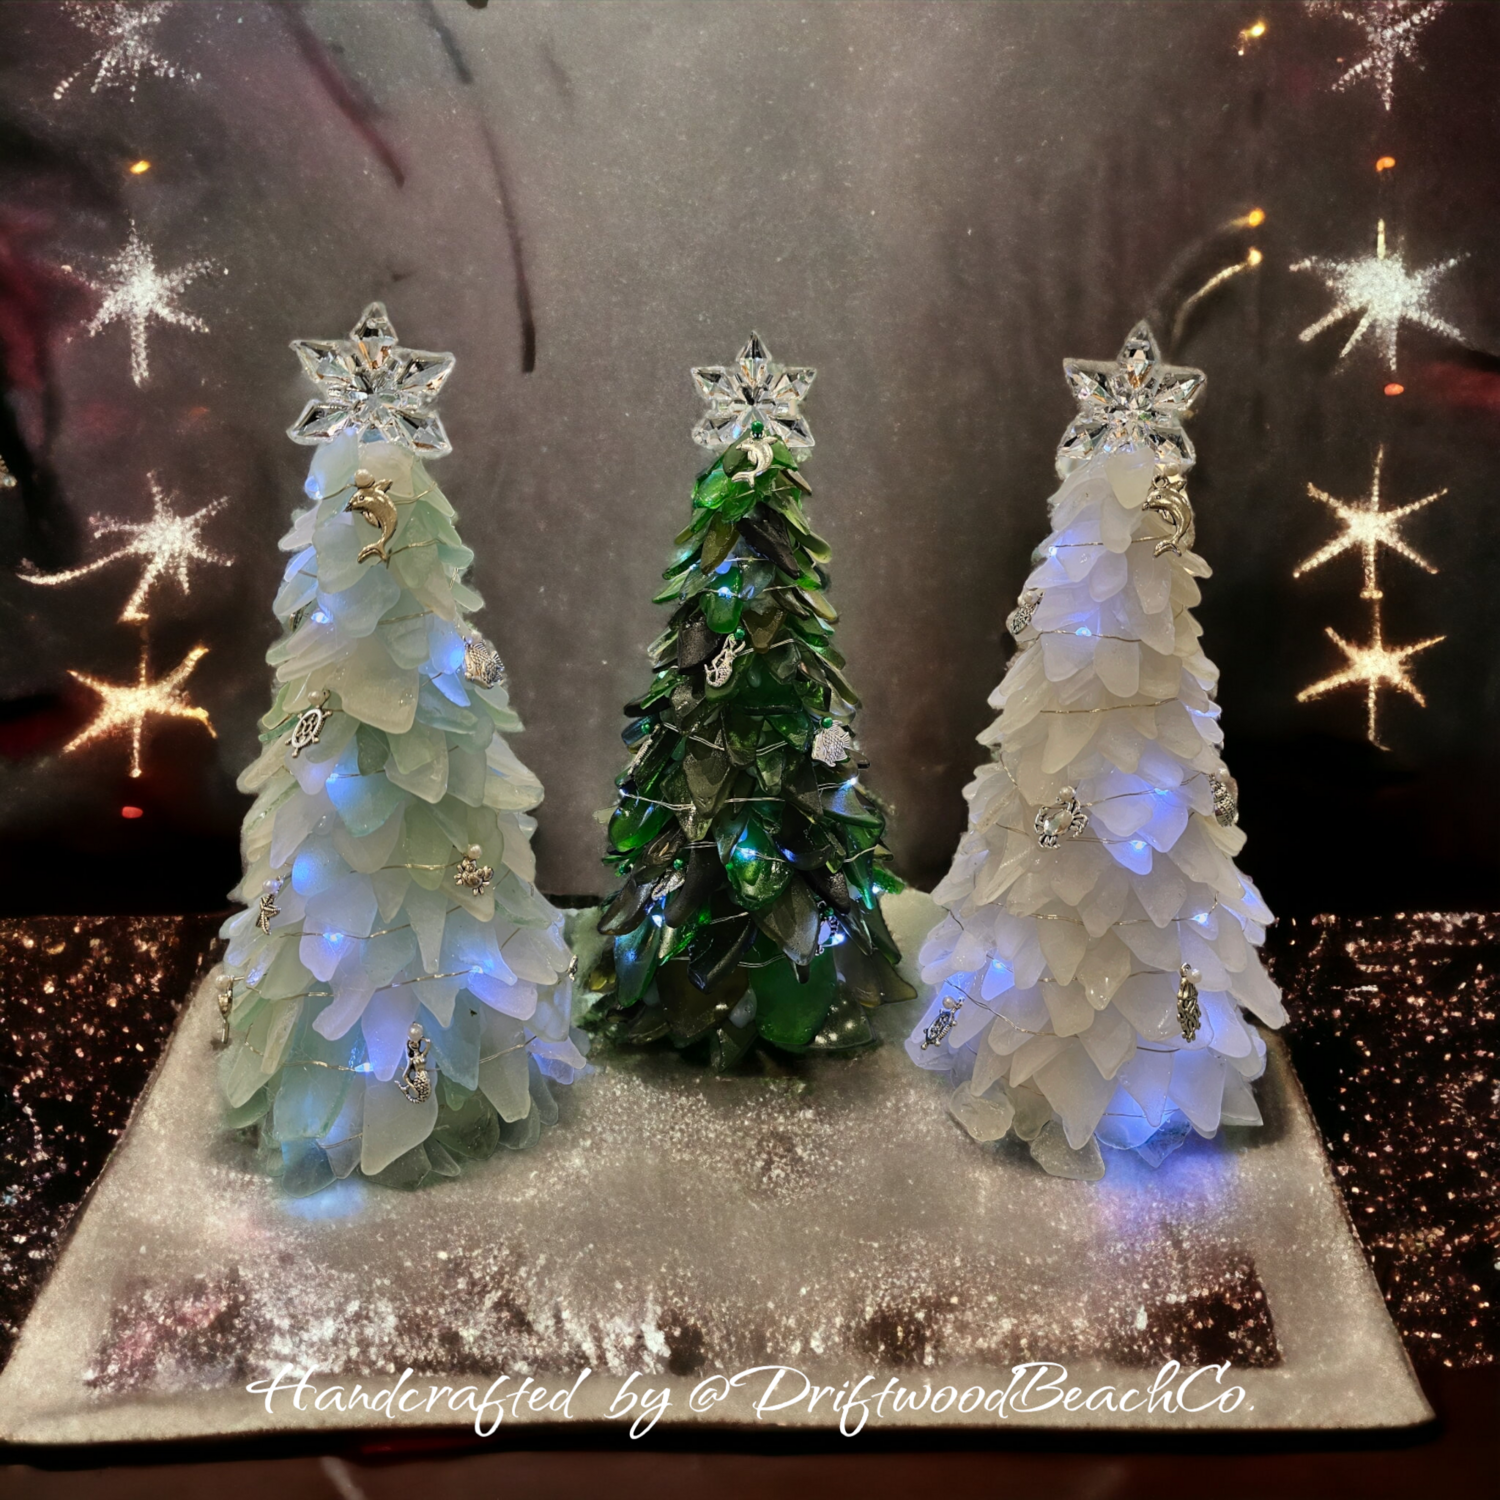 Sea glass Christmas Tree with Lights & Sea life Charms